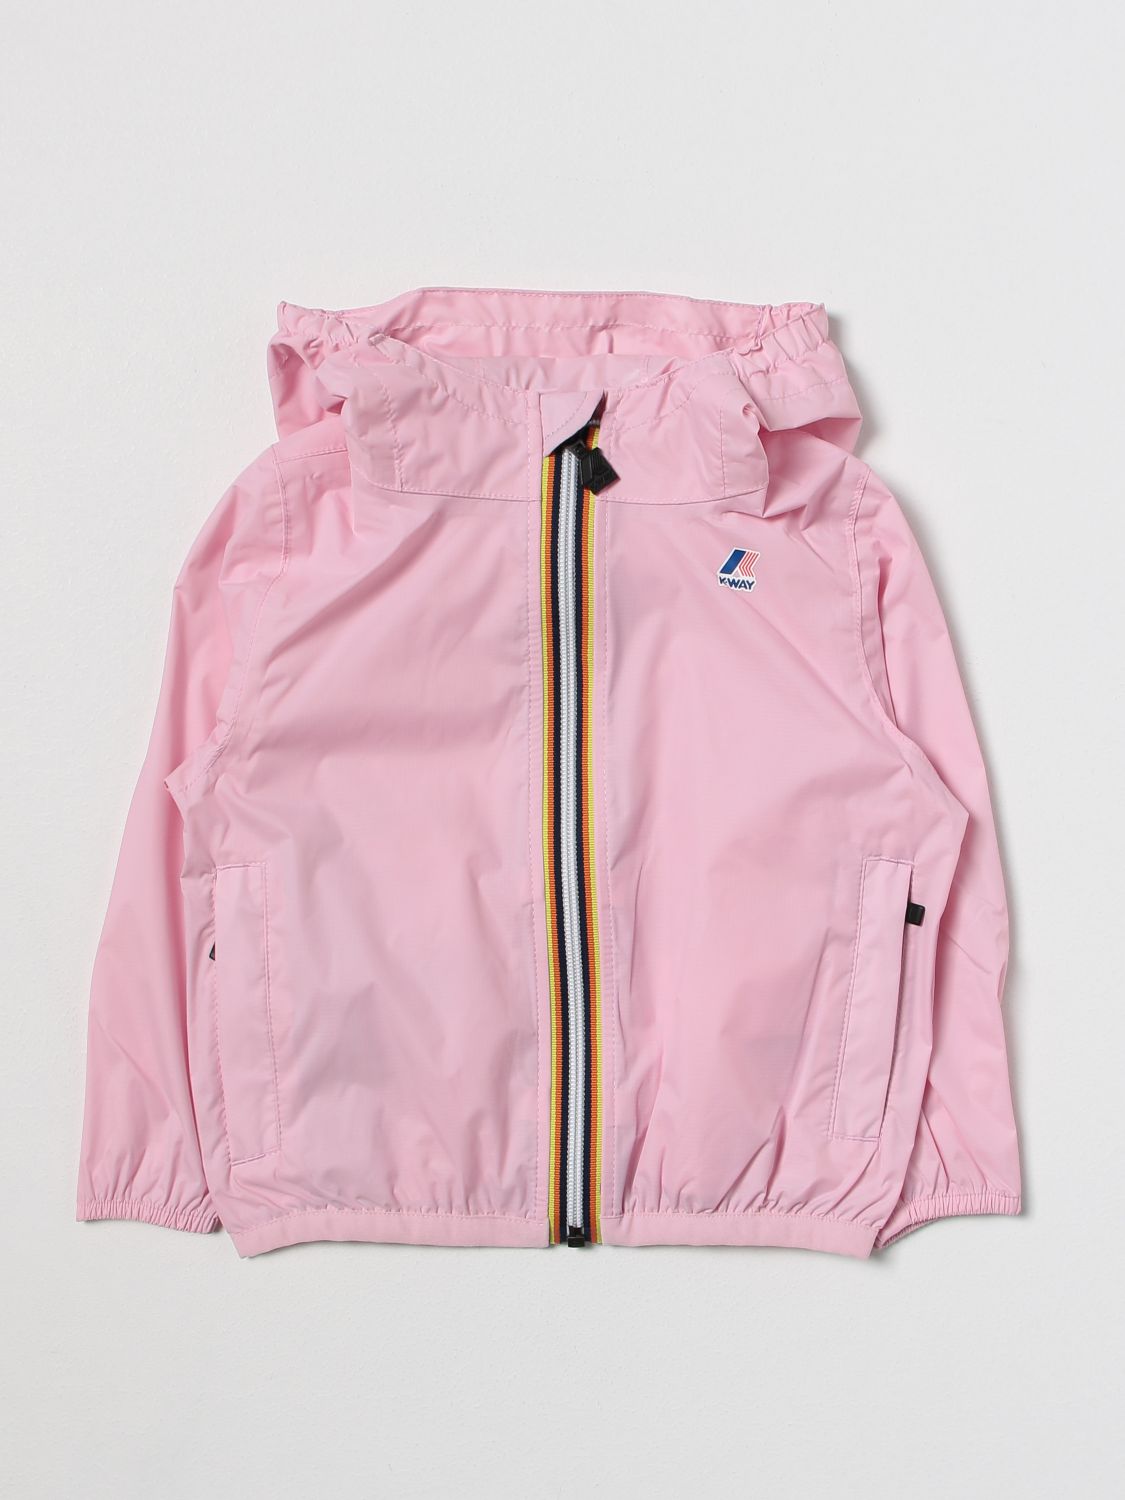 K-way Jacket  Kids Color Blush Pink